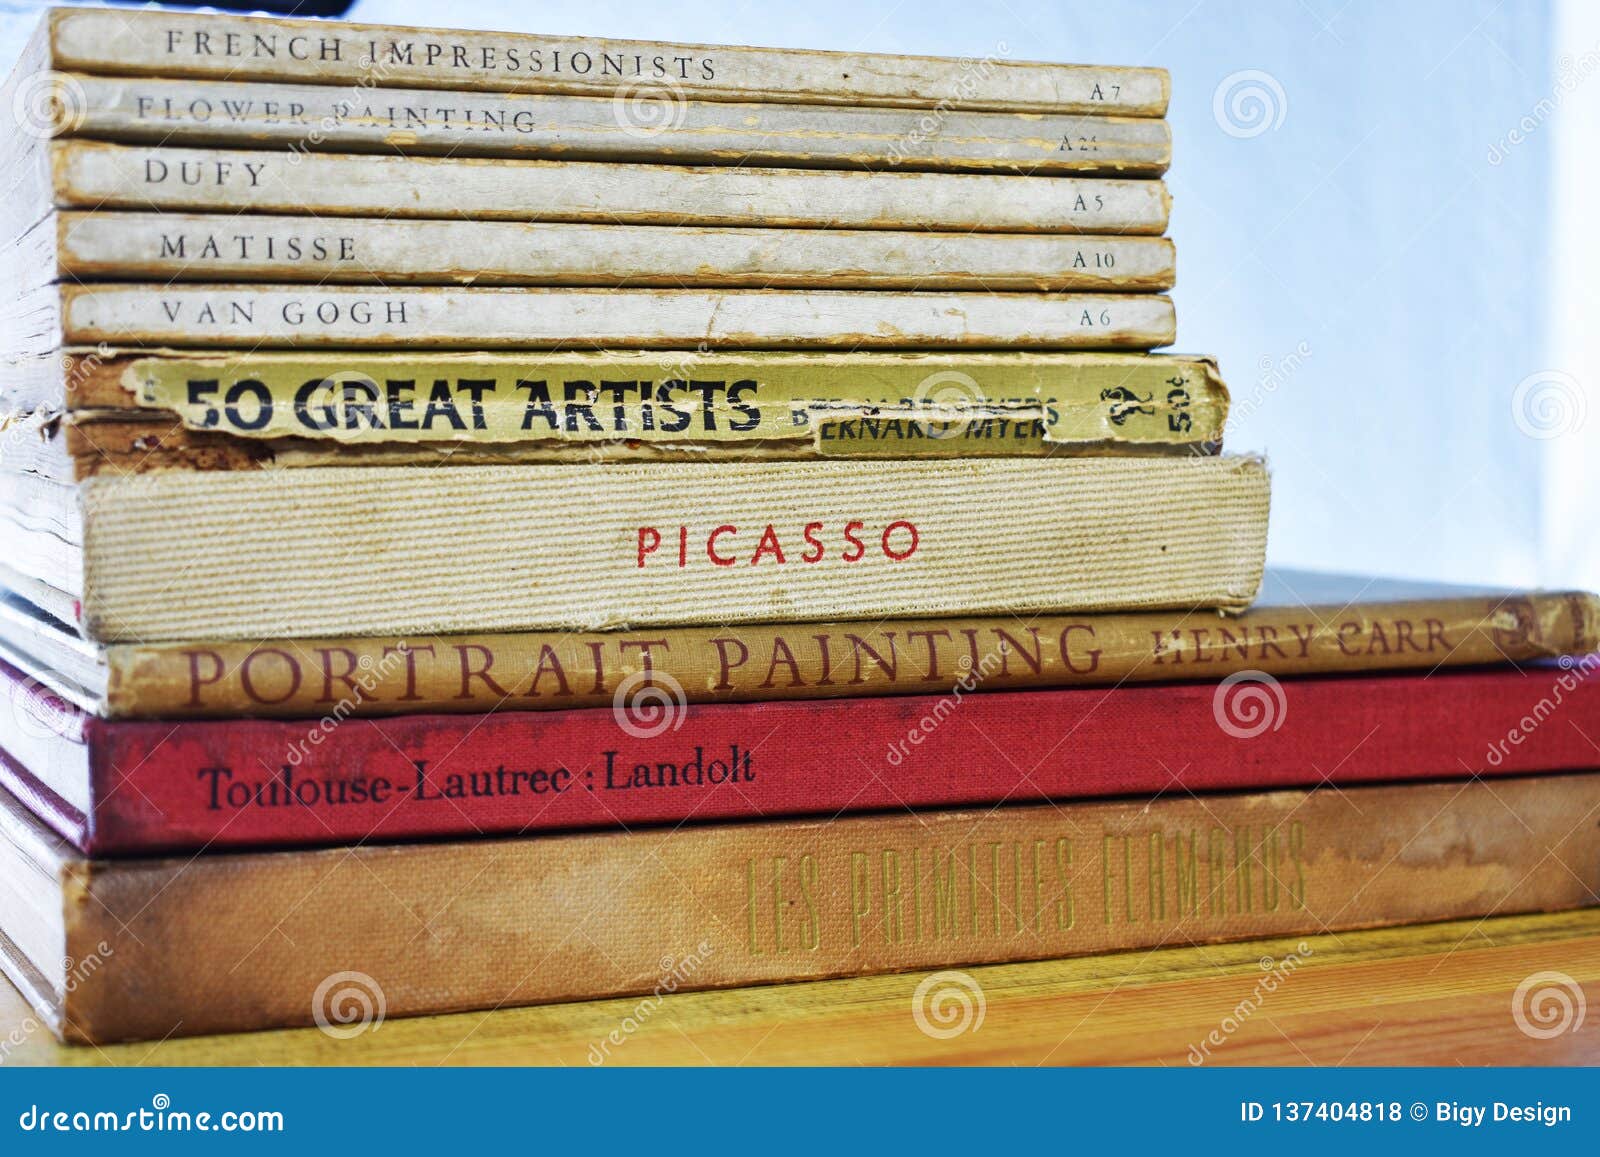 Pittore anziano Books - Dufy, Matisse, Van Gogh Picasso. Pittore anziano Books - Dufy, Matisse, Van Gogh, Picasso, pittura del ritratto, impressionisti francesi